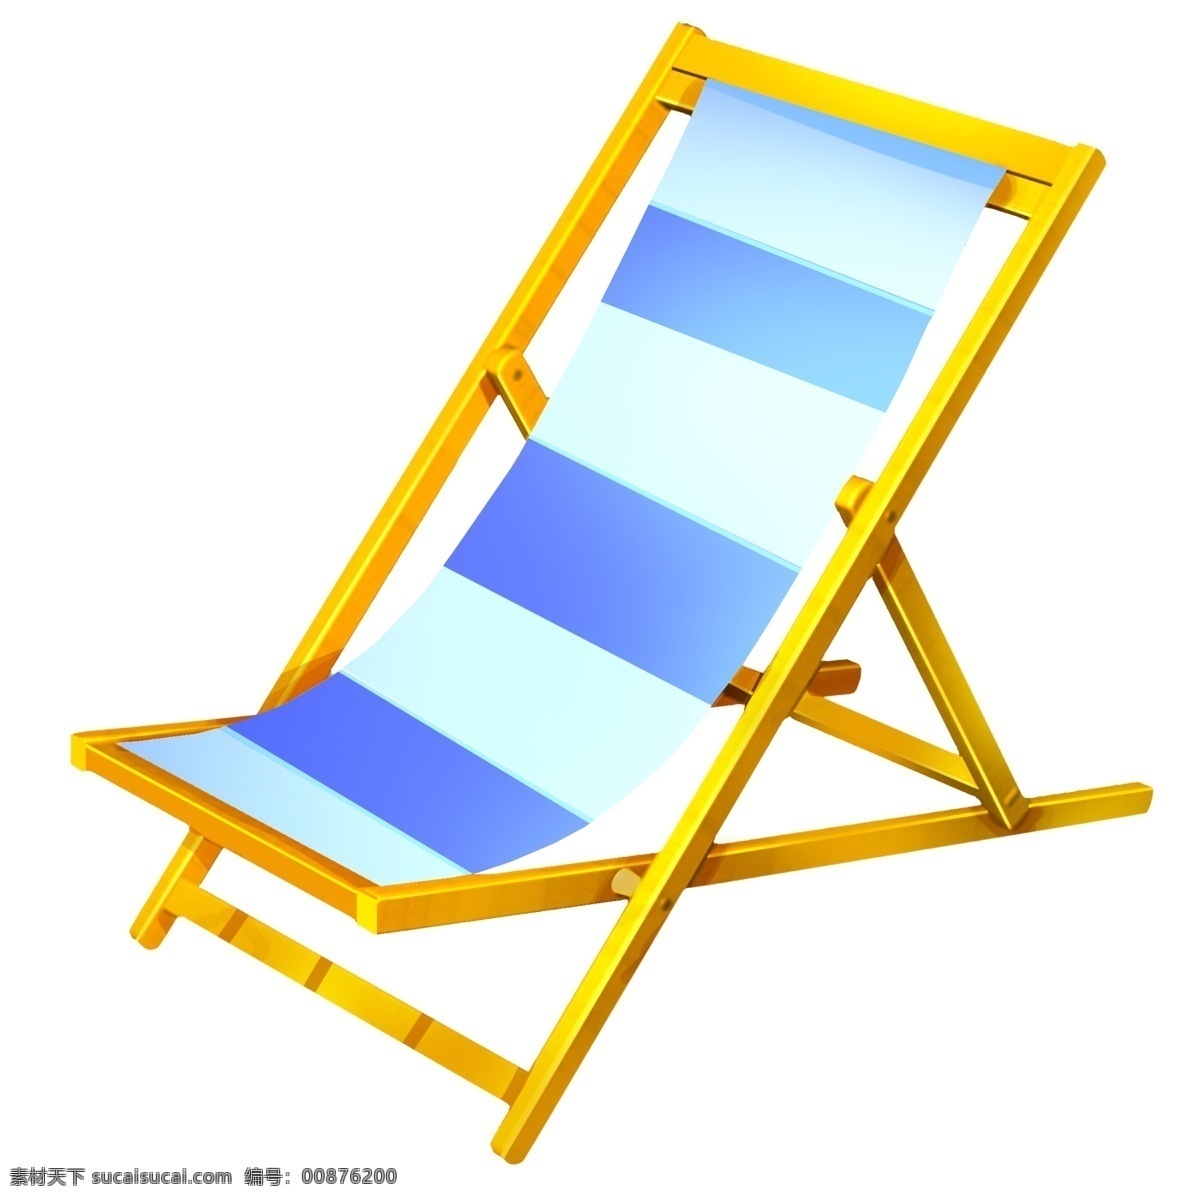 黄色躺椅工具 沙滩 旅游 休息